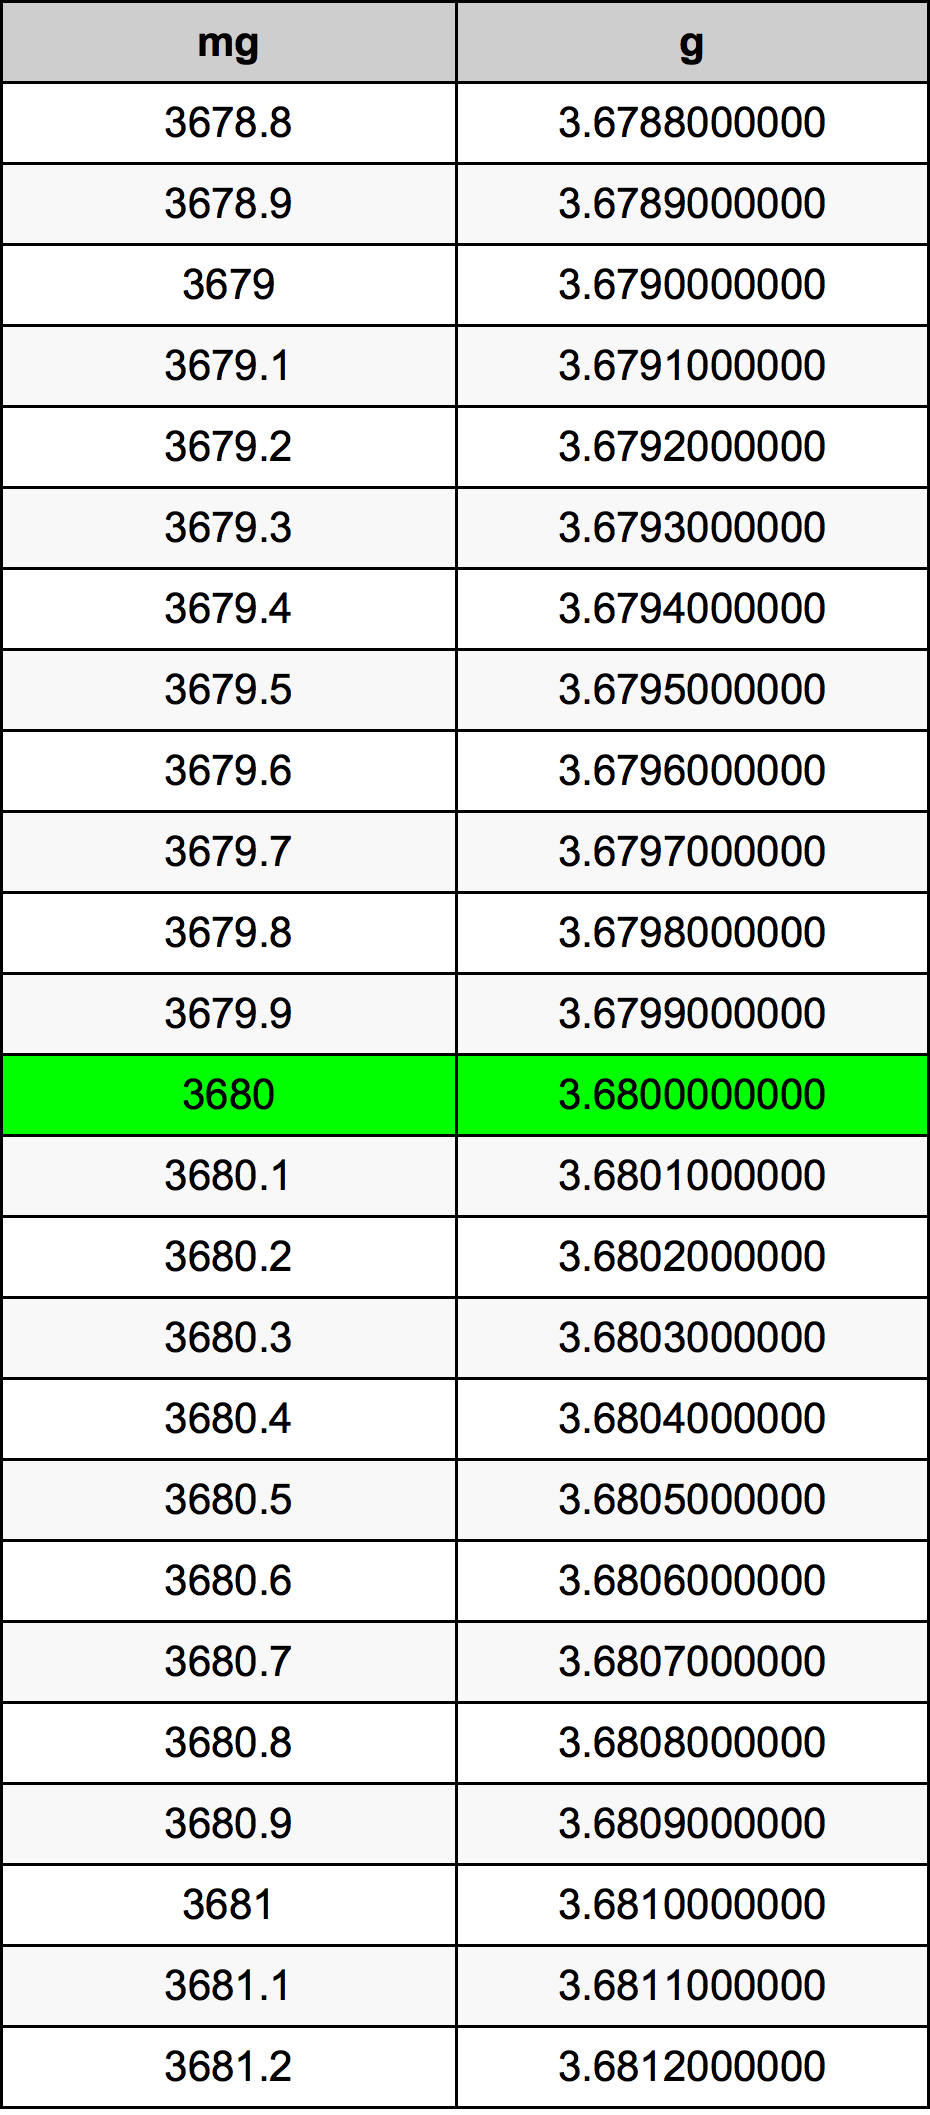 3680 Milligramma konverżjoni tabella